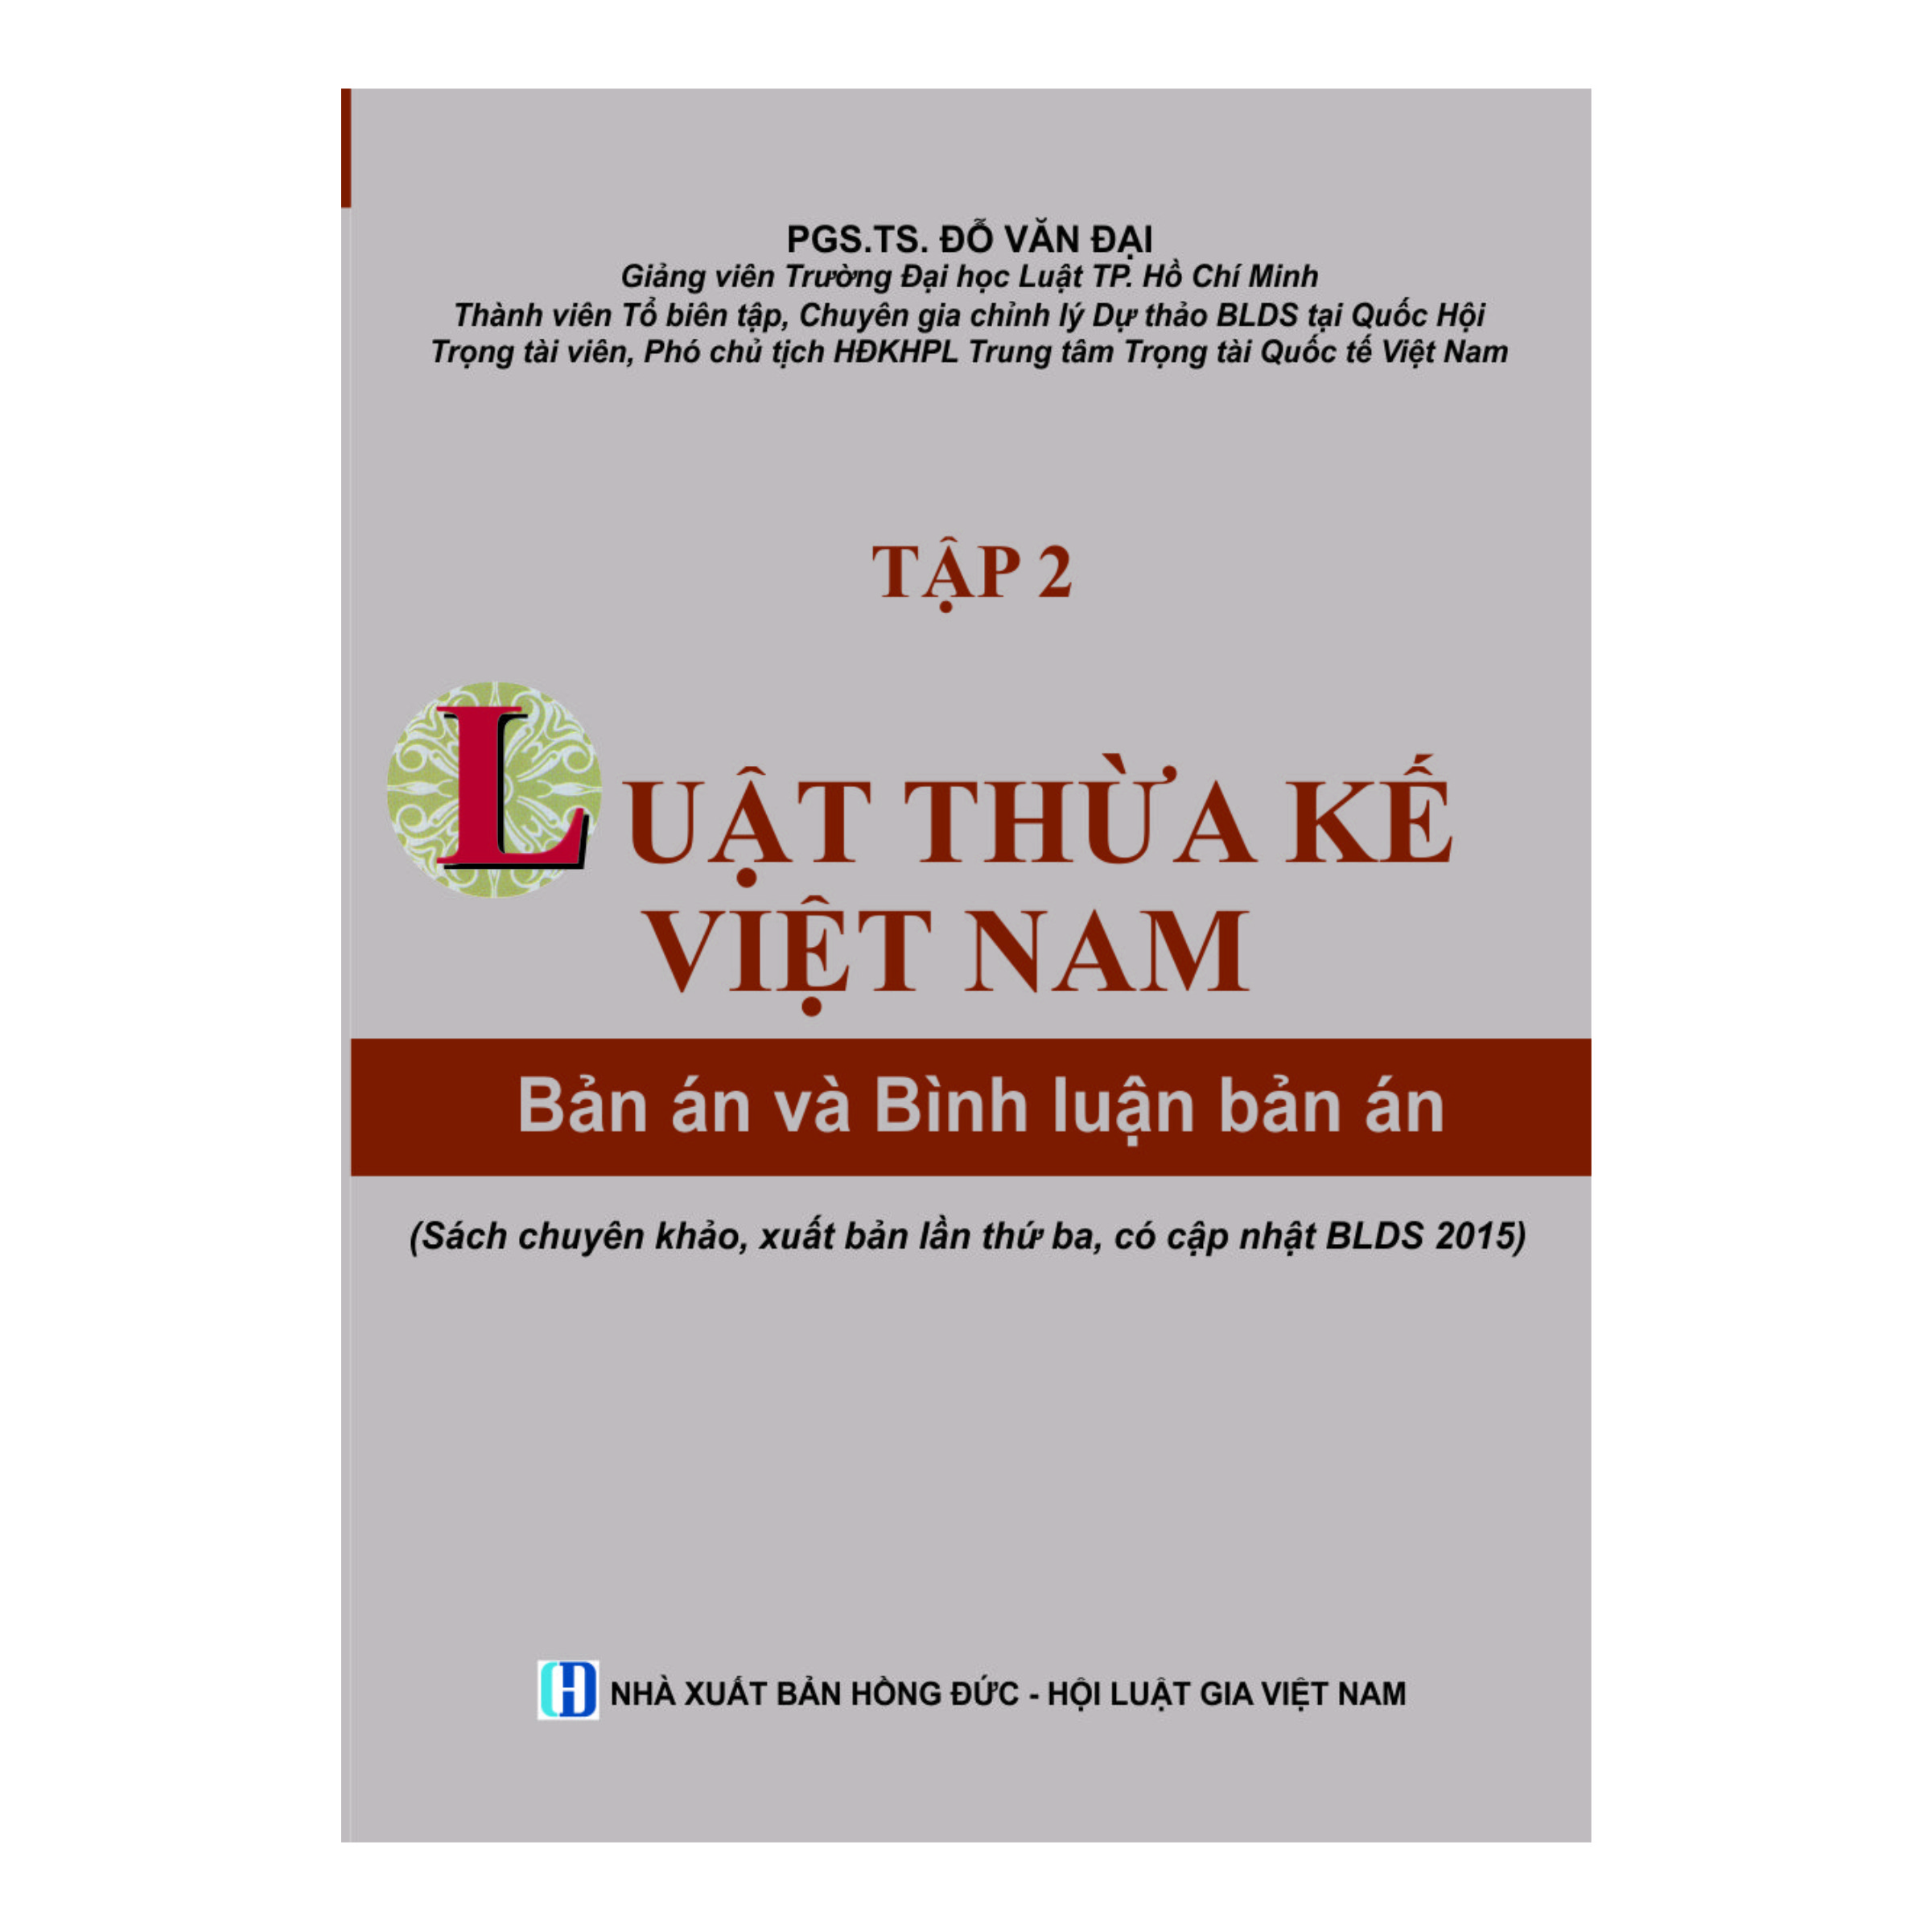 Luật Thừa kế Việt Nam - Bản án và Bình luận bản án (Tập 2)